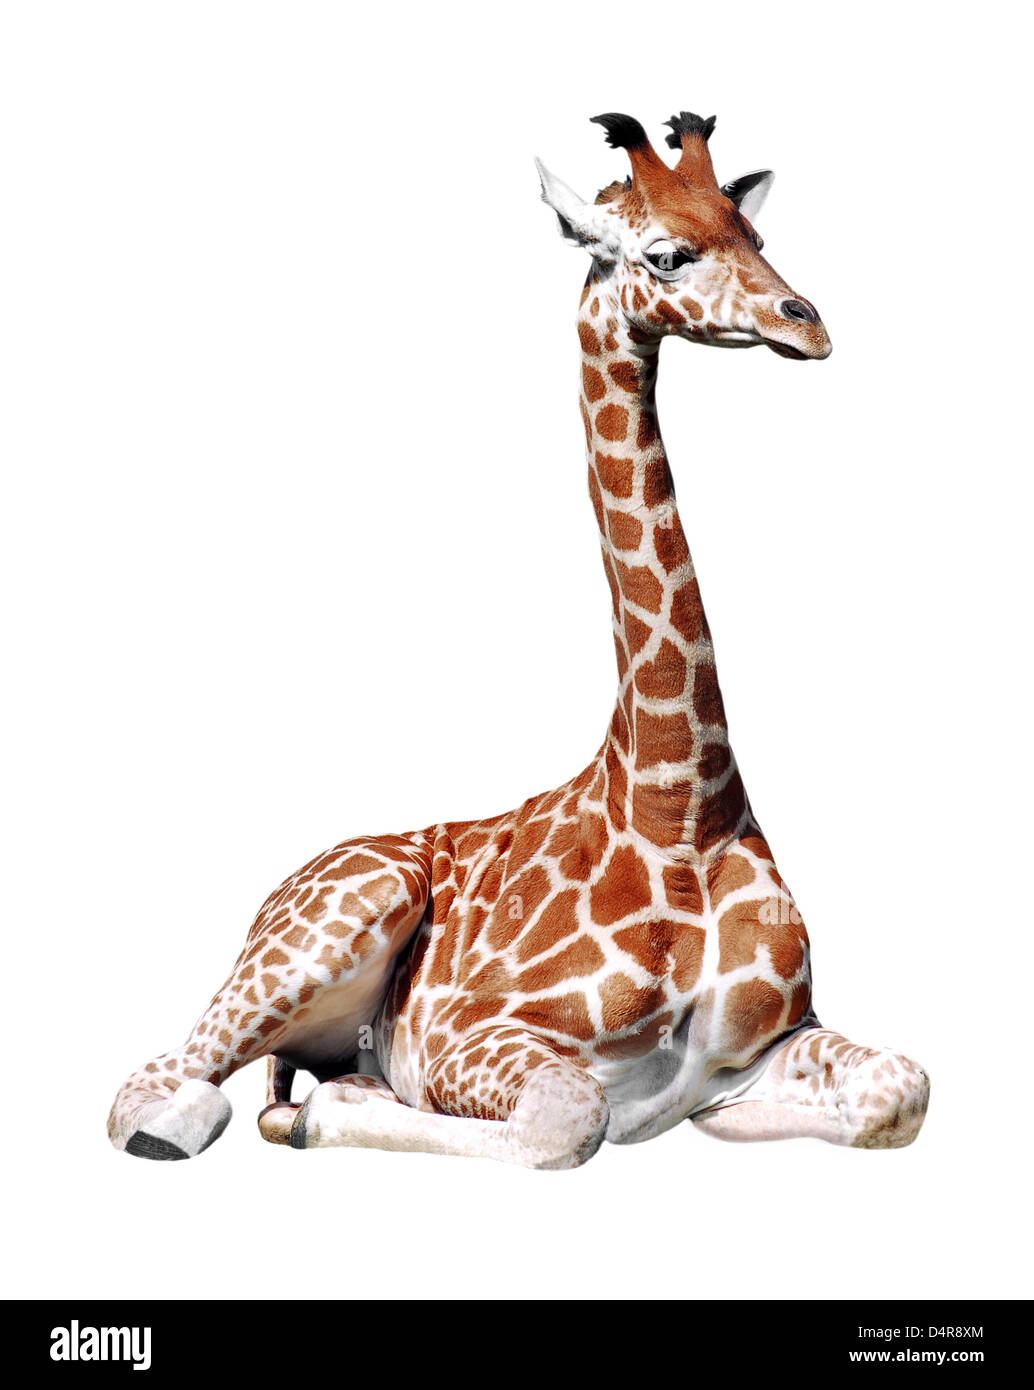 Jirafa (Giraffa camelopardalis) sentado aislado sobre fondo blanco. Foto de stock